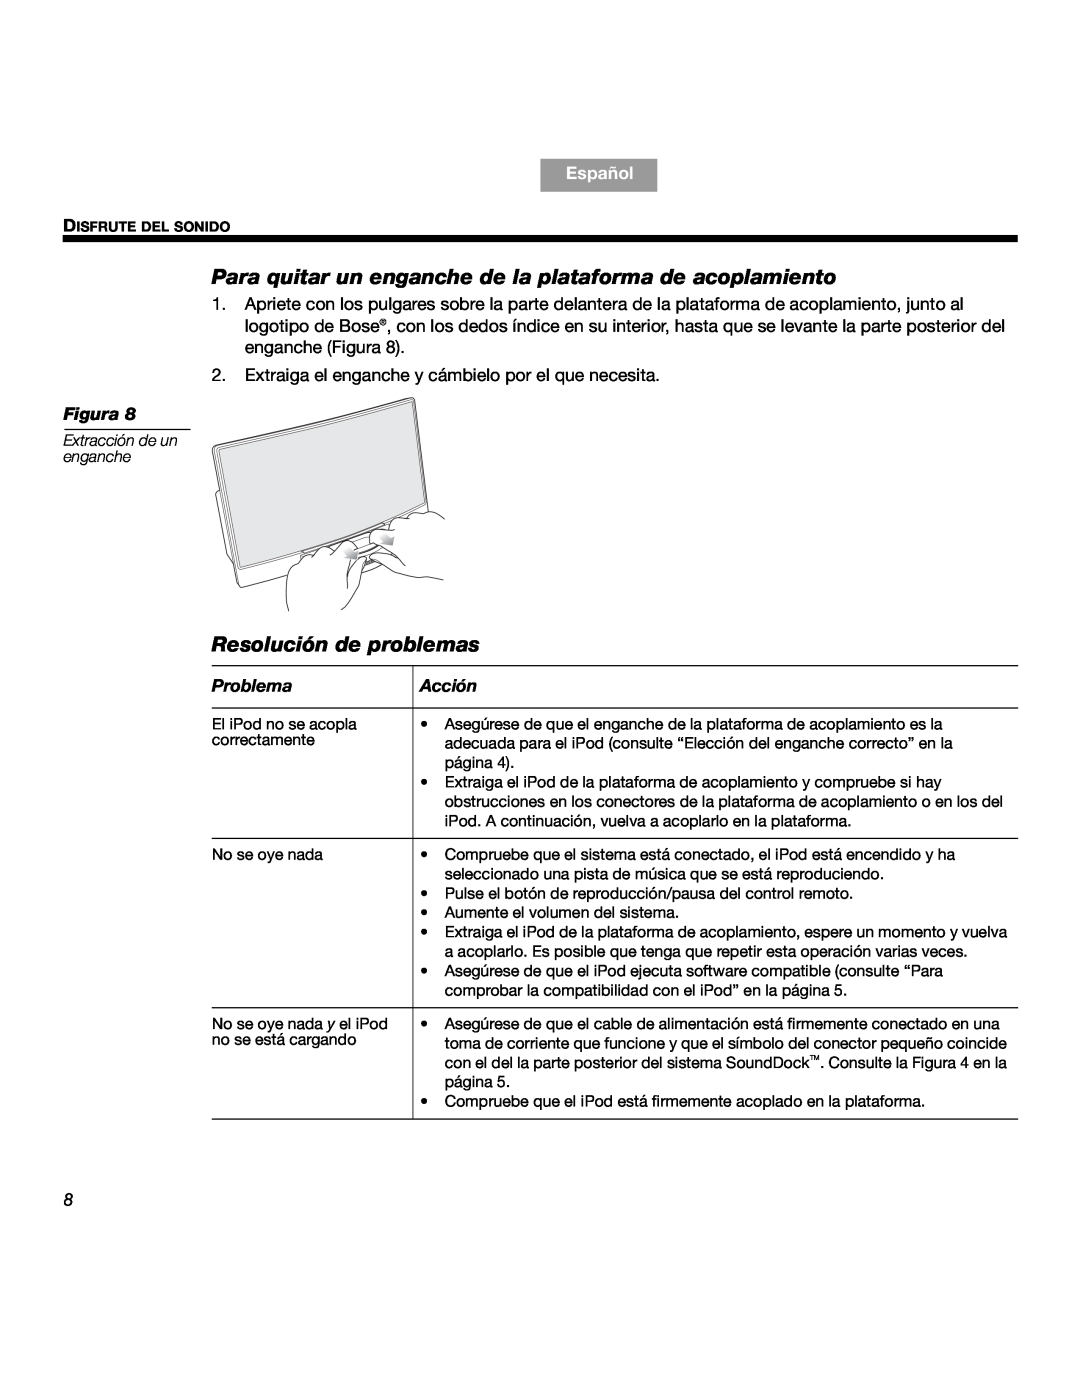 Bose SOUNDDOCKTM manual Resolución de problemas, Problema, Acción, Español, Figura 